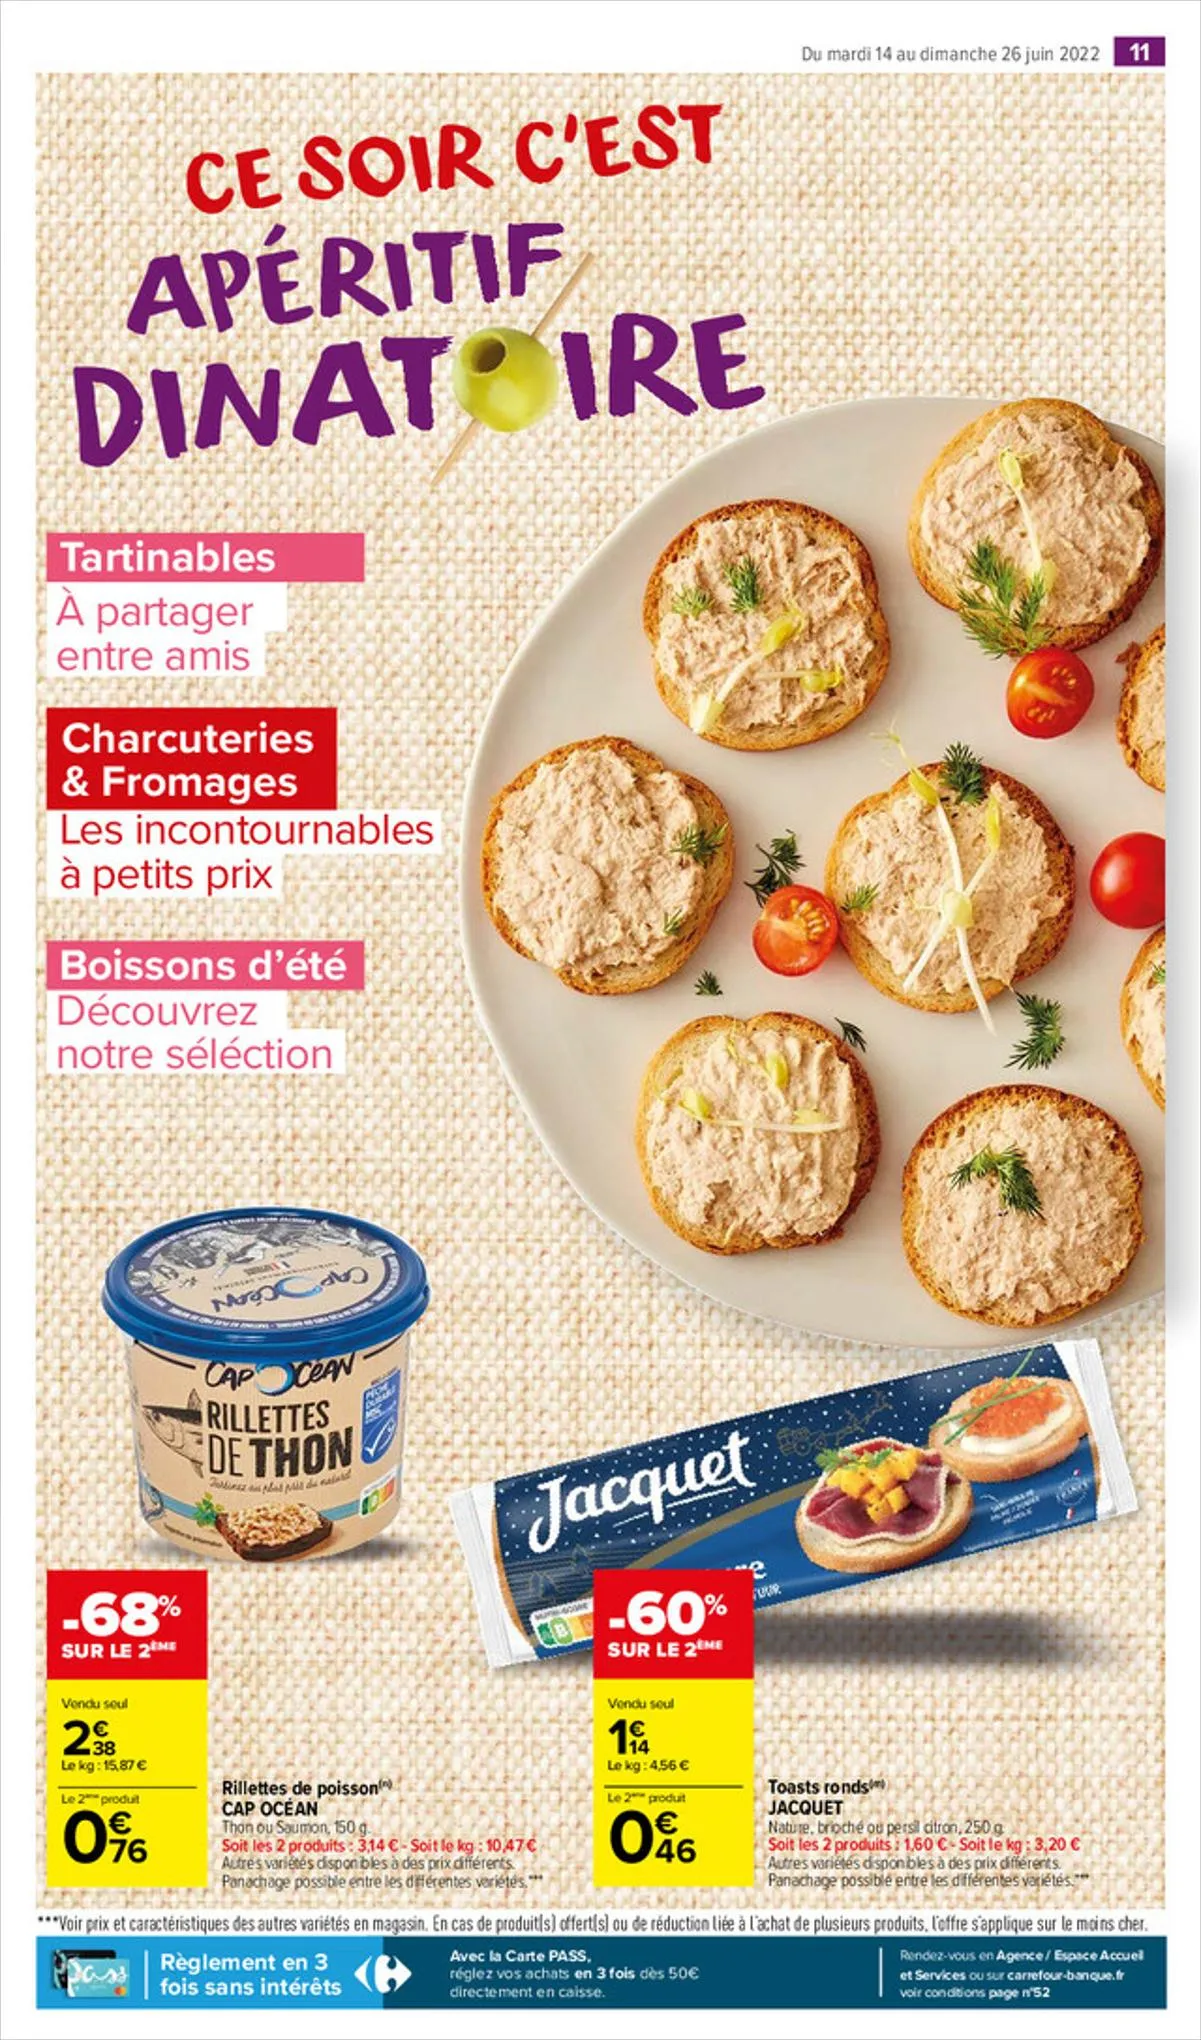 Catalogue Apéro dînatoire, page 00013